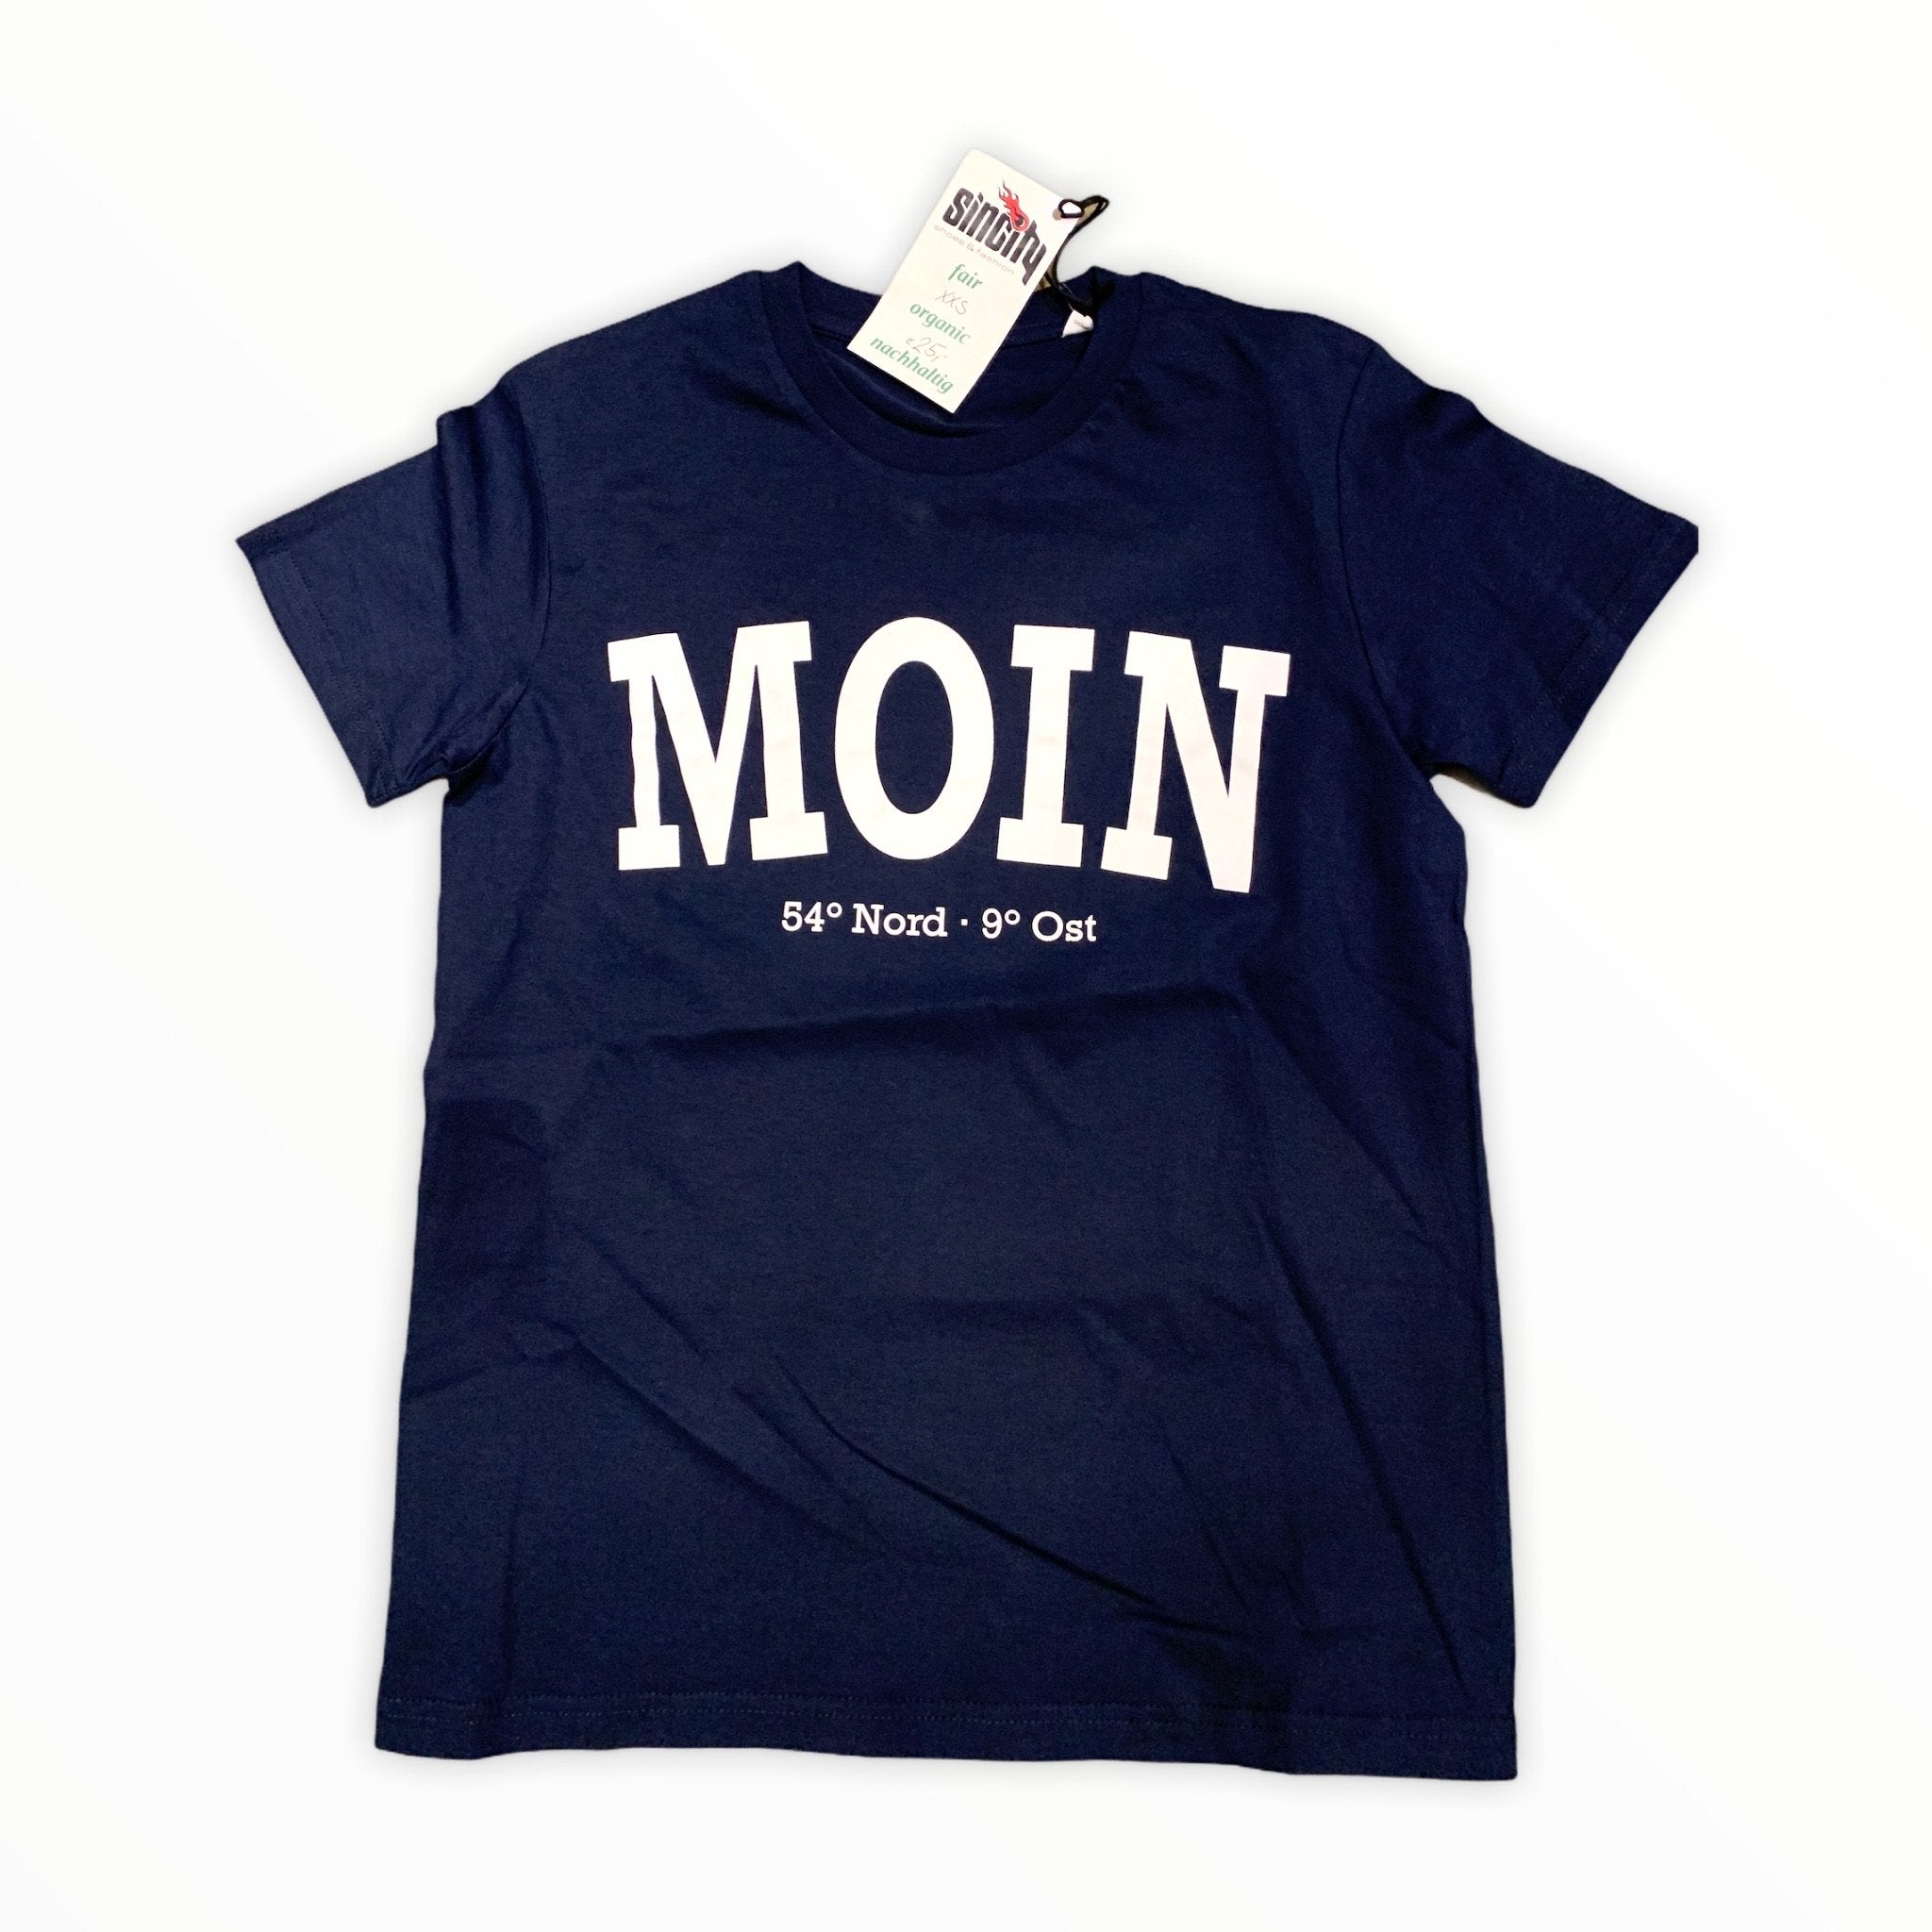 Sincity Moin T-Shirt Navy